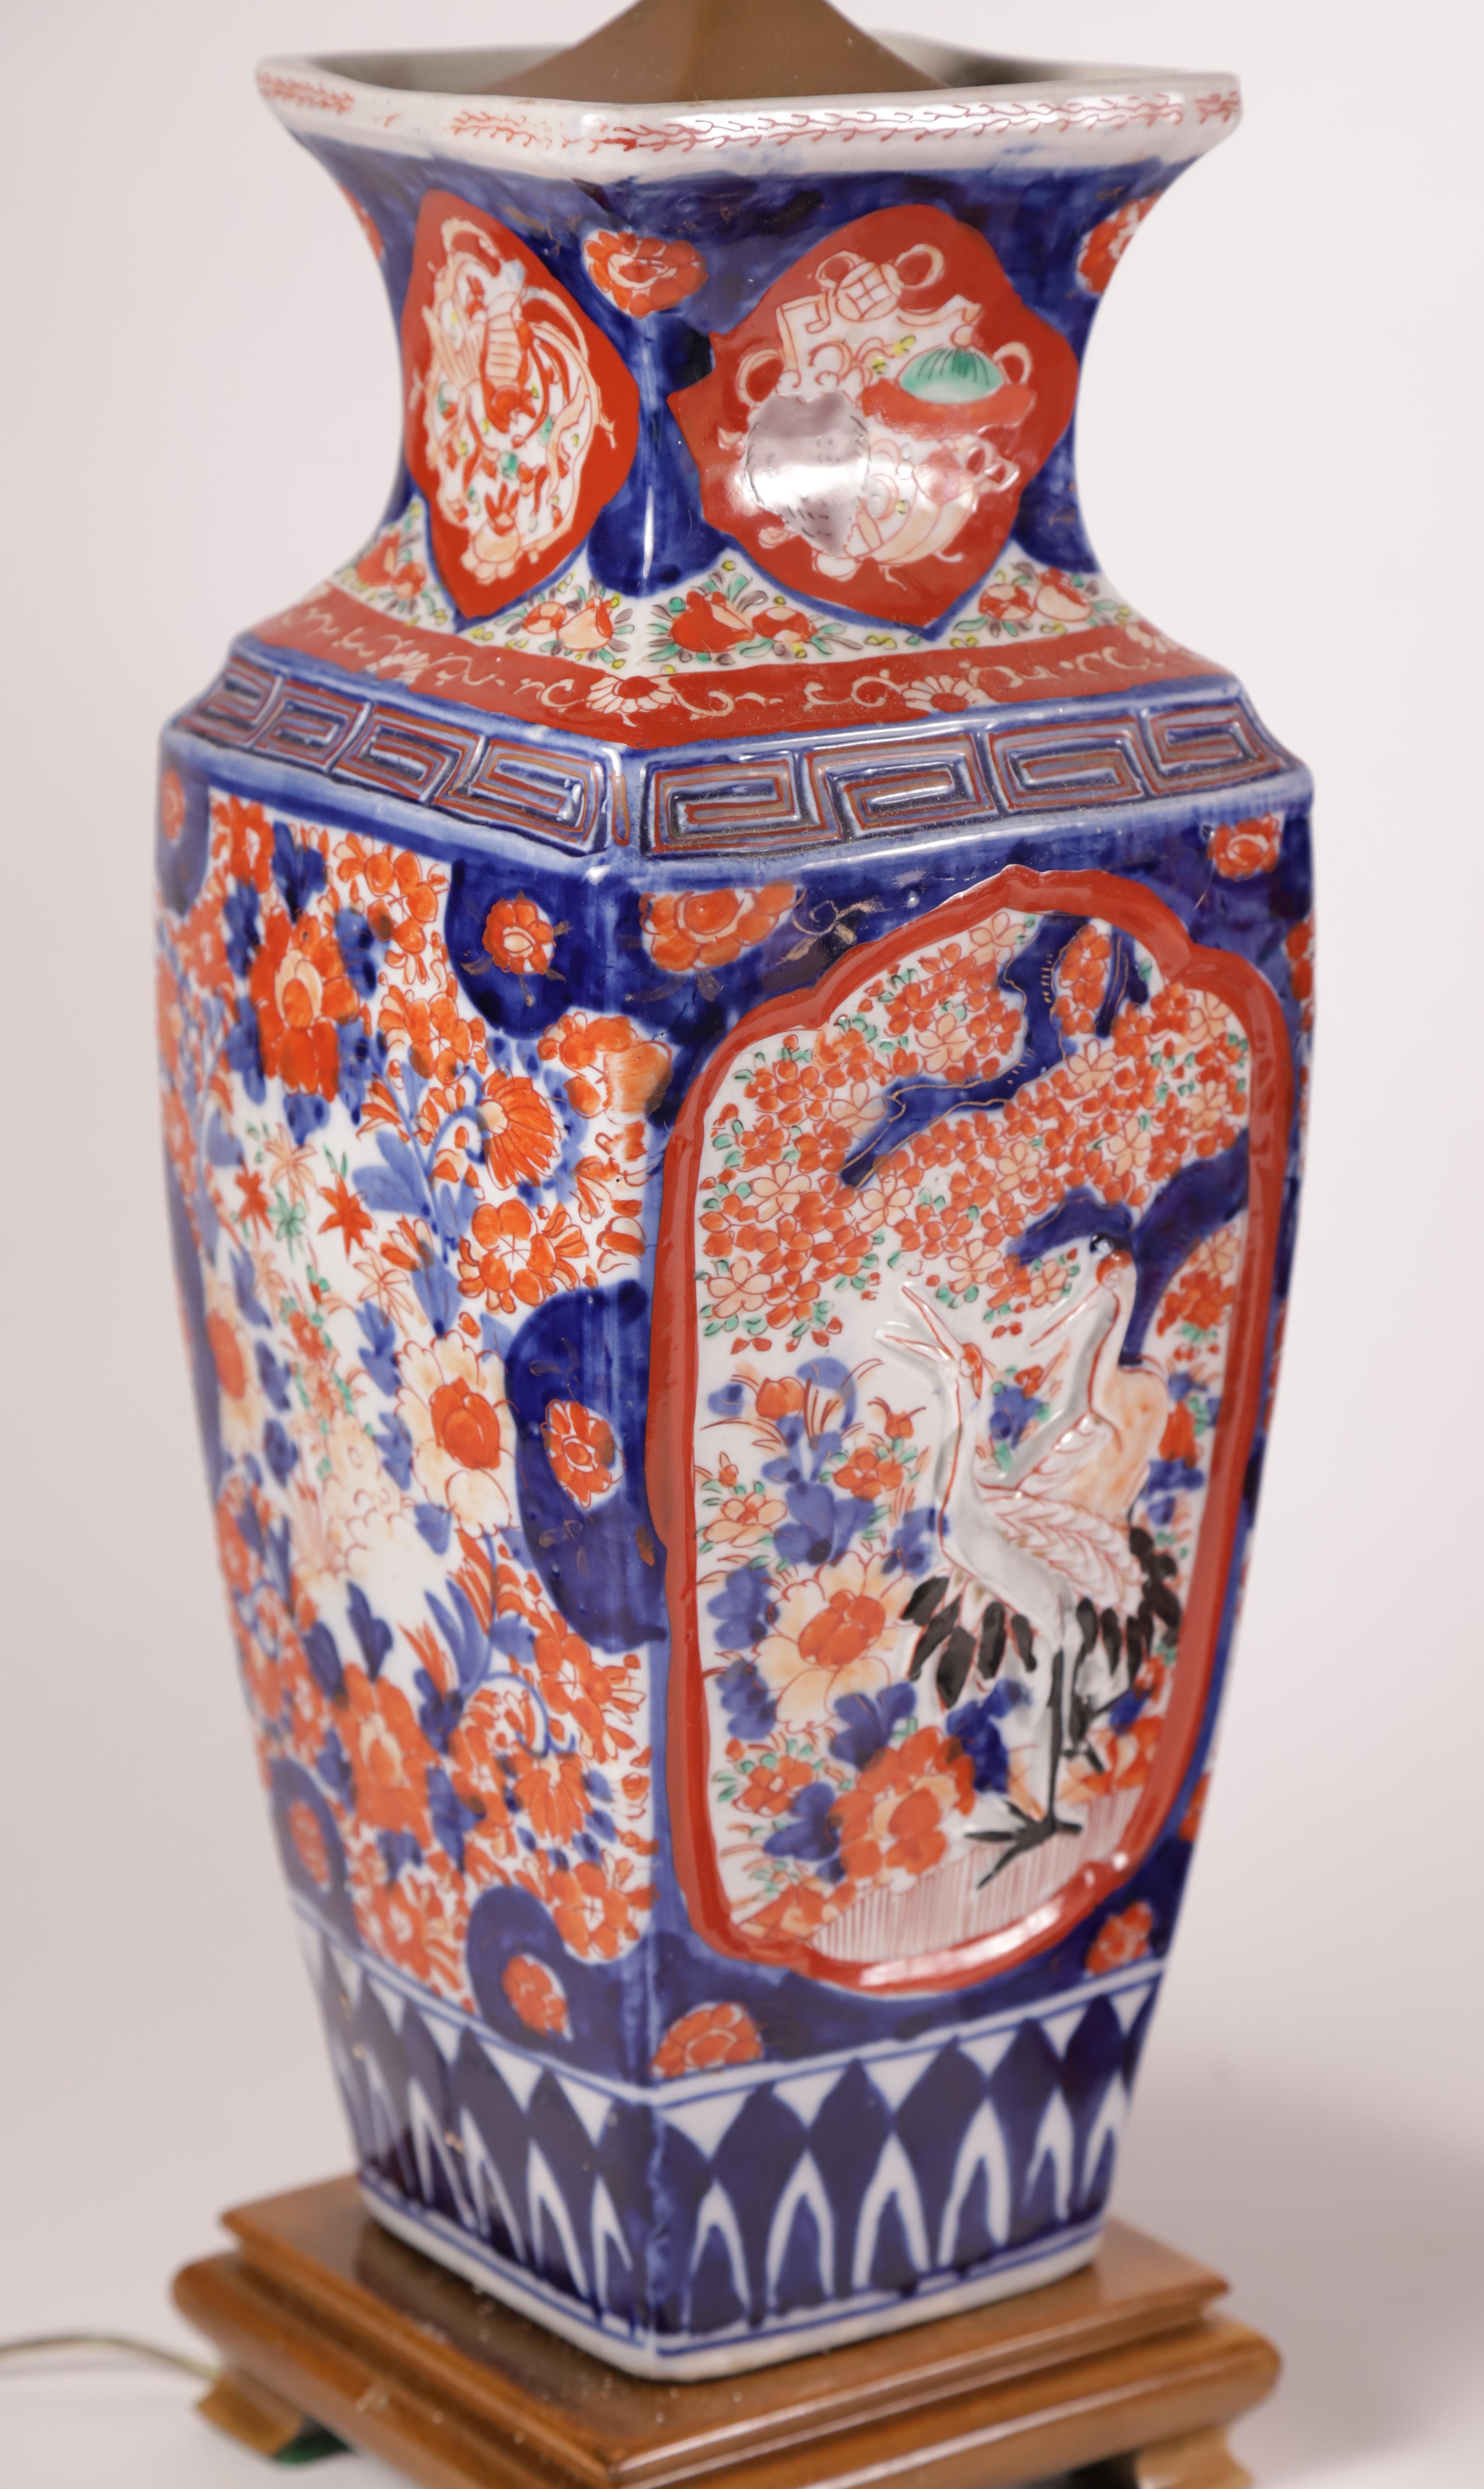 Pair of Chinese Imari Porcelain Lamps